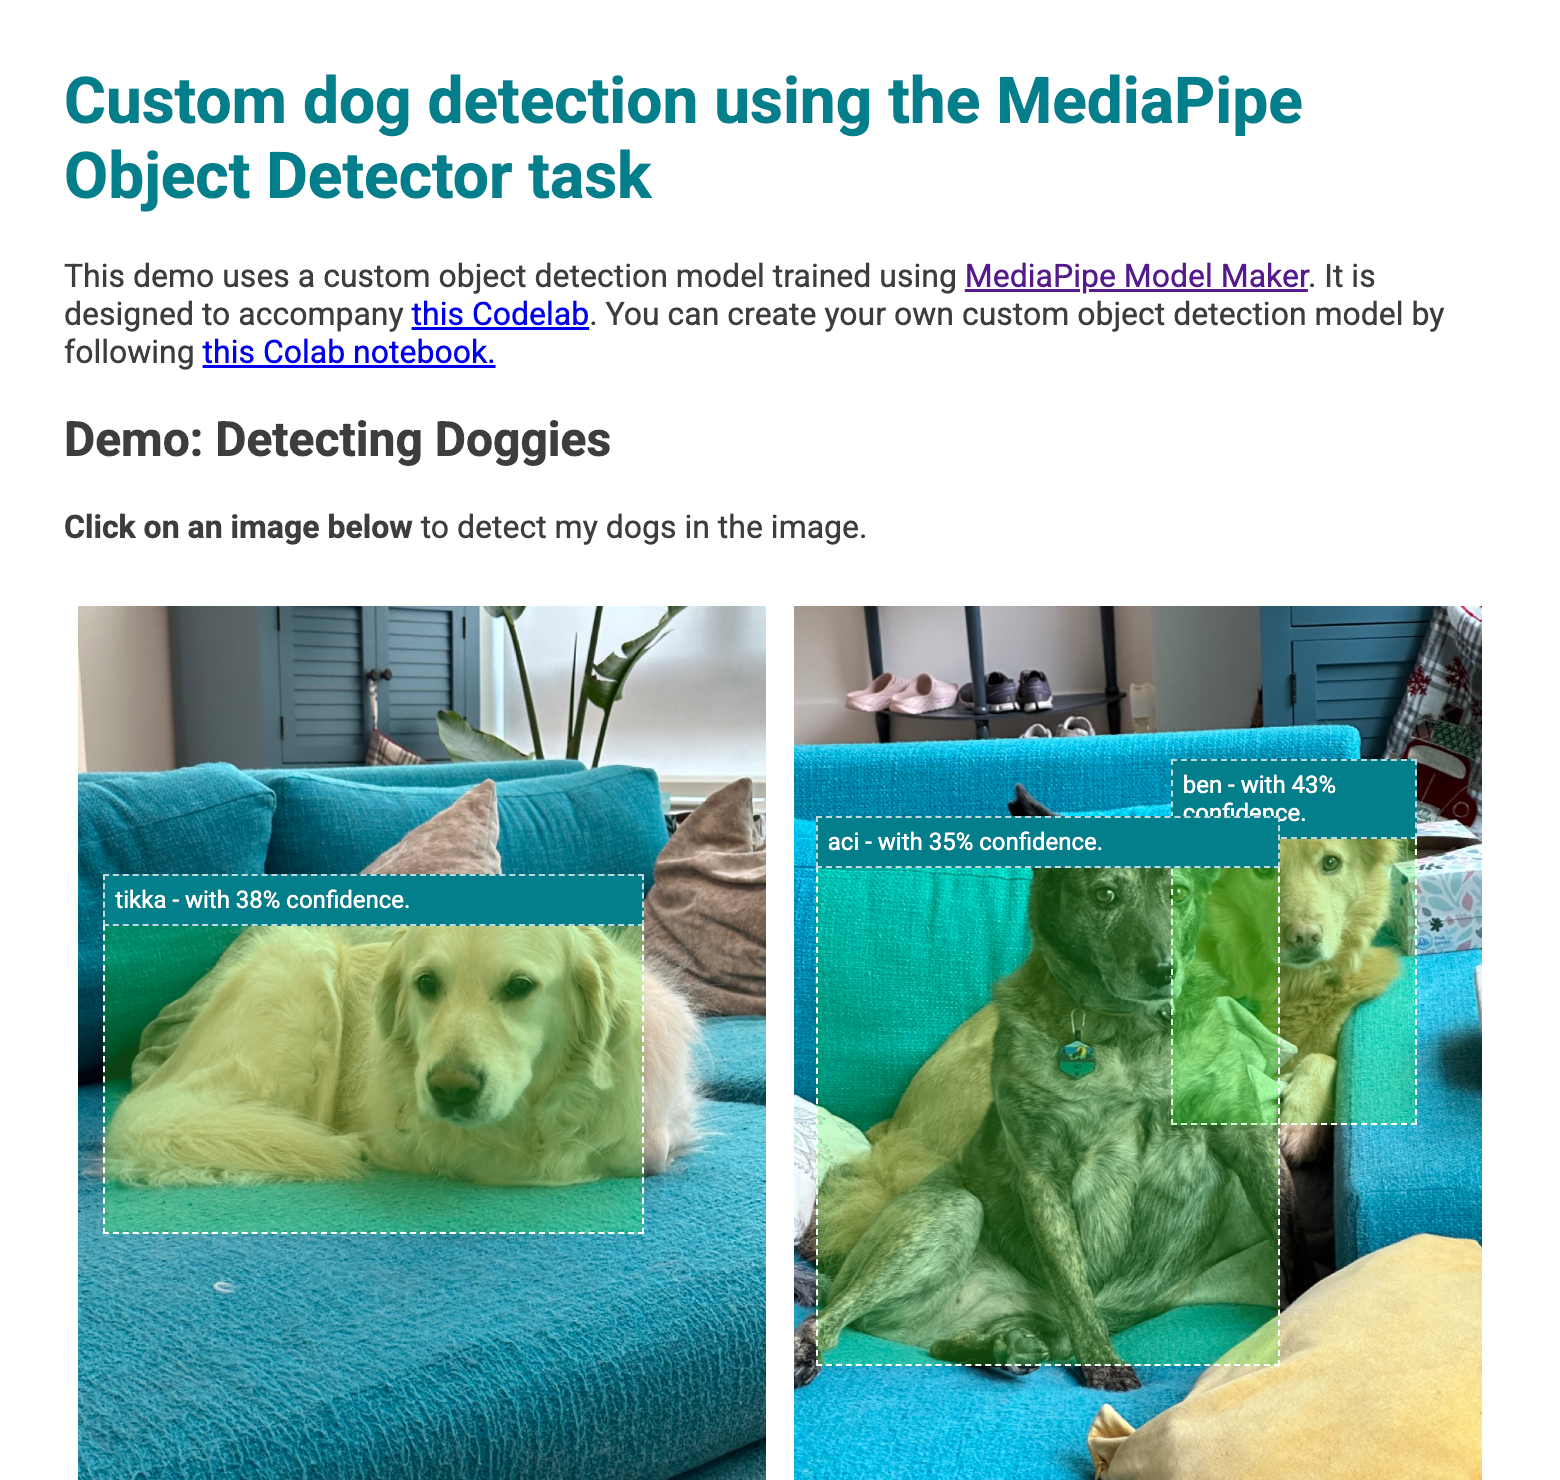 Bản xem trước ứng dụng web với các hộp giới hạn trên những chú chó được phát hiện trong hình ảnh